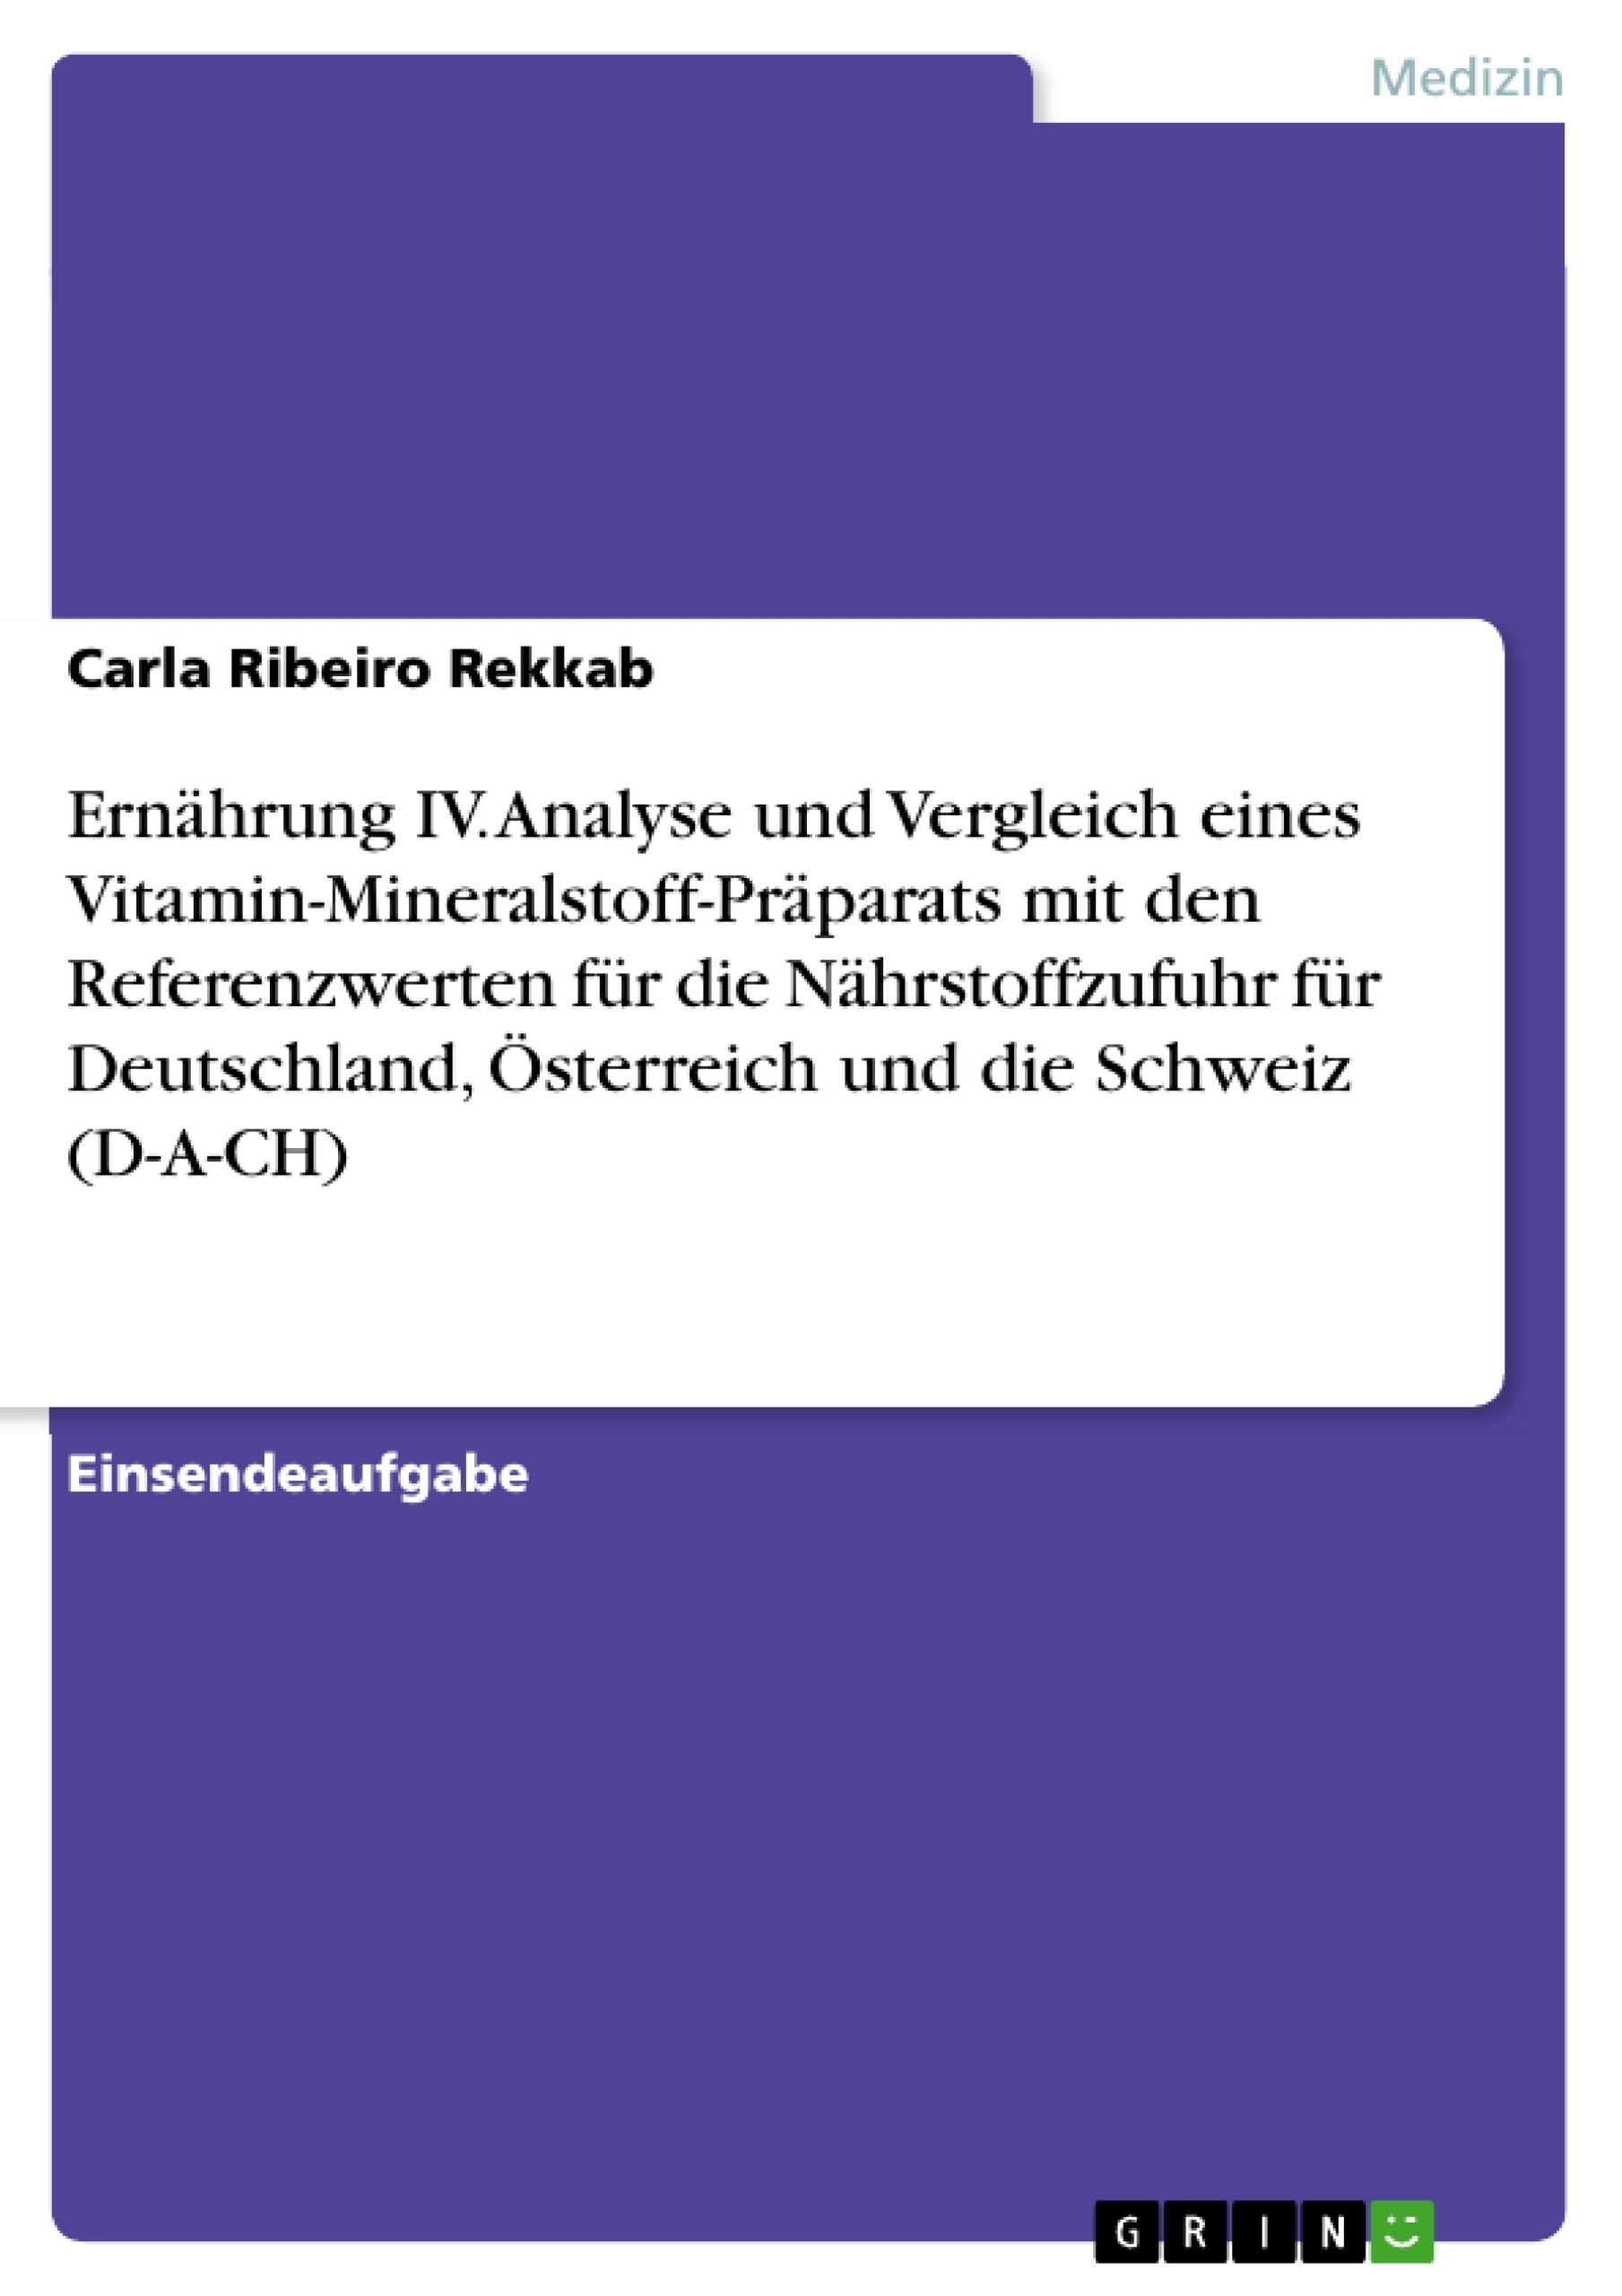 Title: Ernährung IV. Analyse und Vergleich eines Vitamin-Mineralstoff-Präparats mit den Referenzwerten für die Nährstoffzufuhr für Deutschland, Österreich und die Schweiz (D-A-CH)